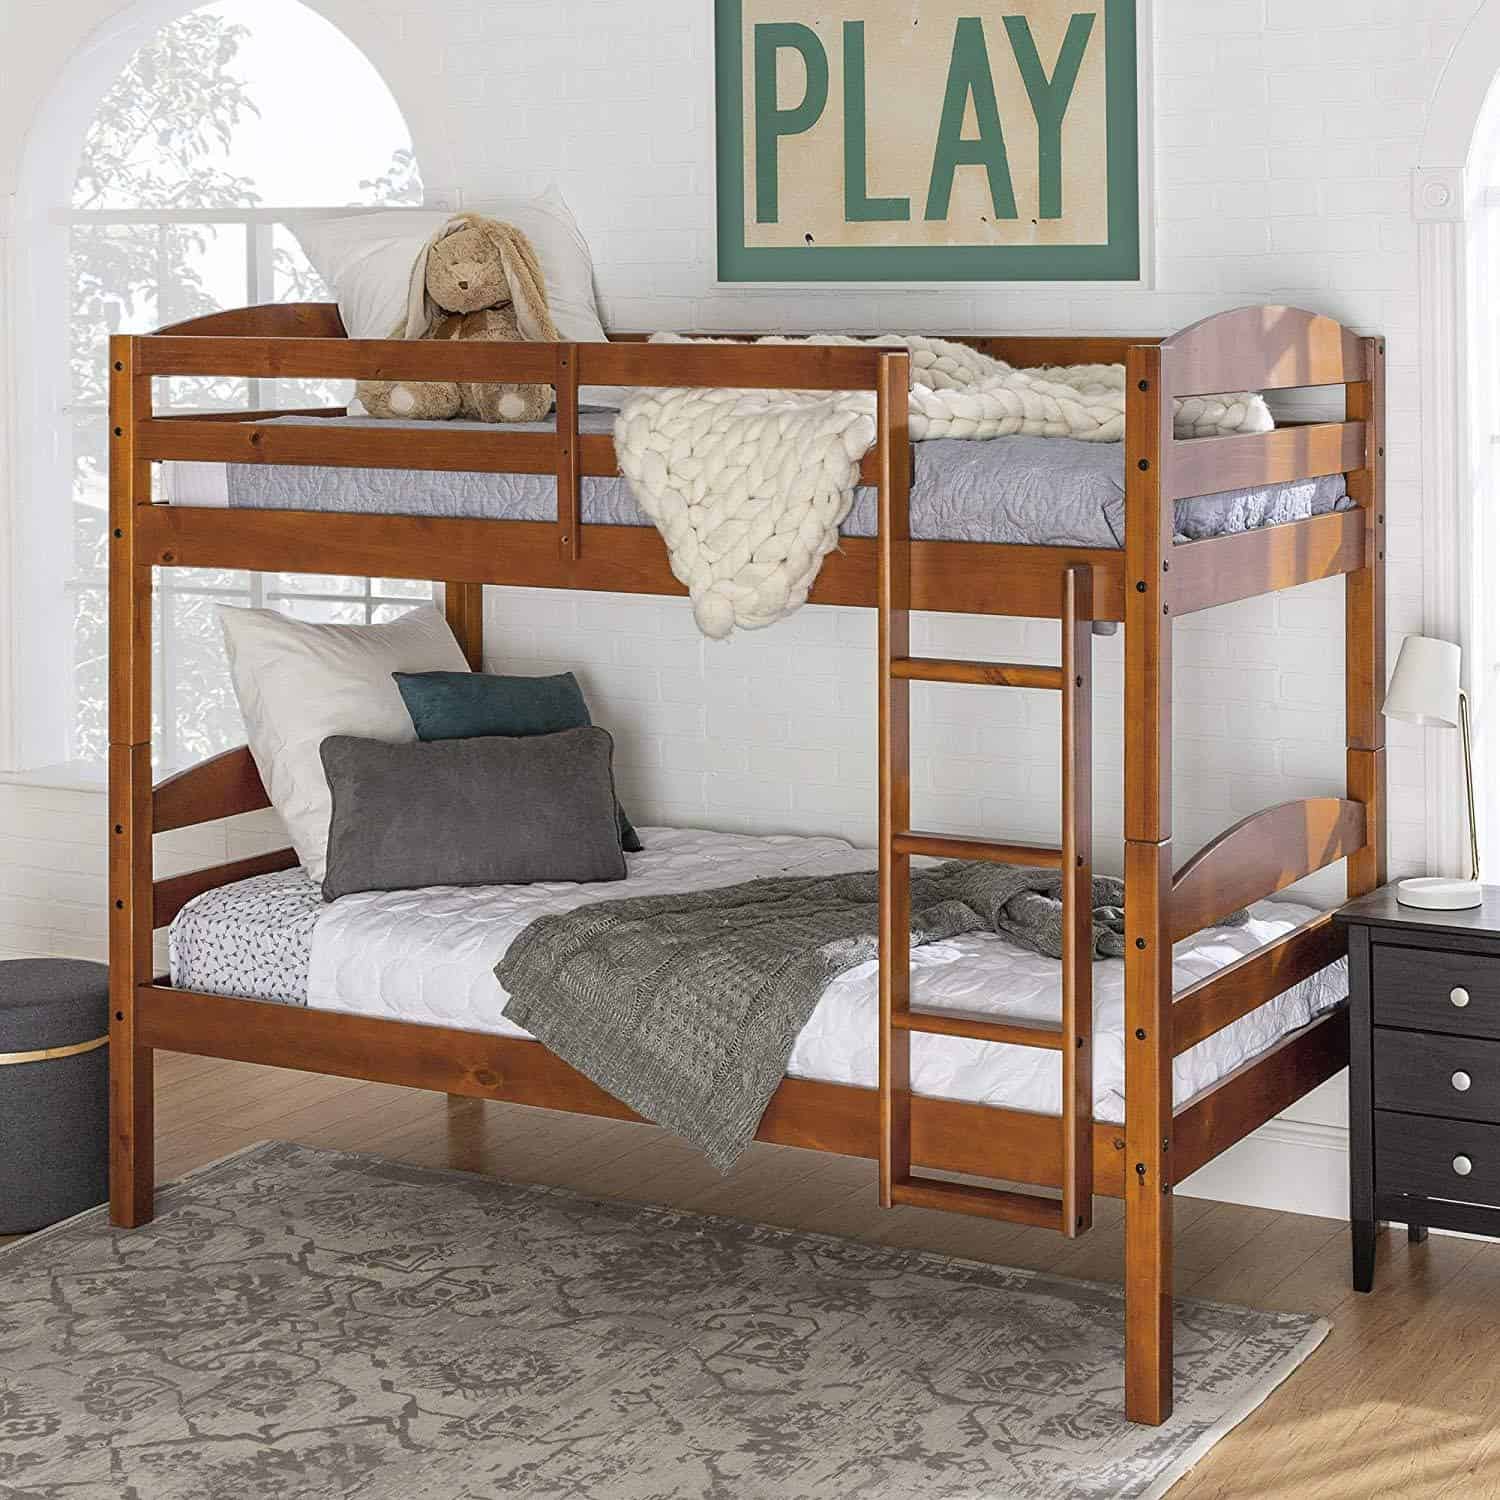 nice bunk beds